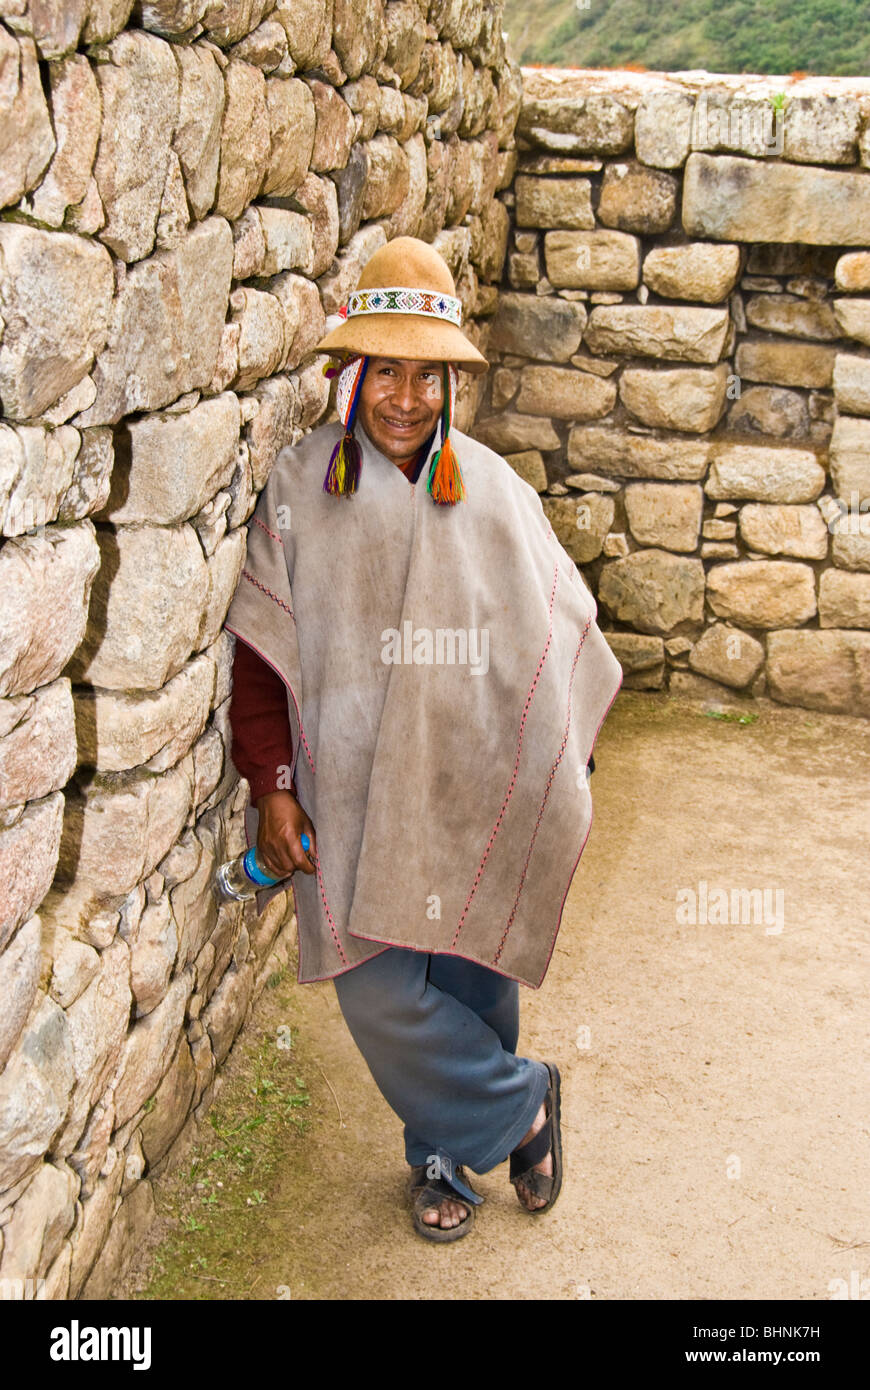 Machu Picchu, Peru, Indigenous man at the archaeological ruins, Inca civilization, South America, Indian culture, Stock Photo